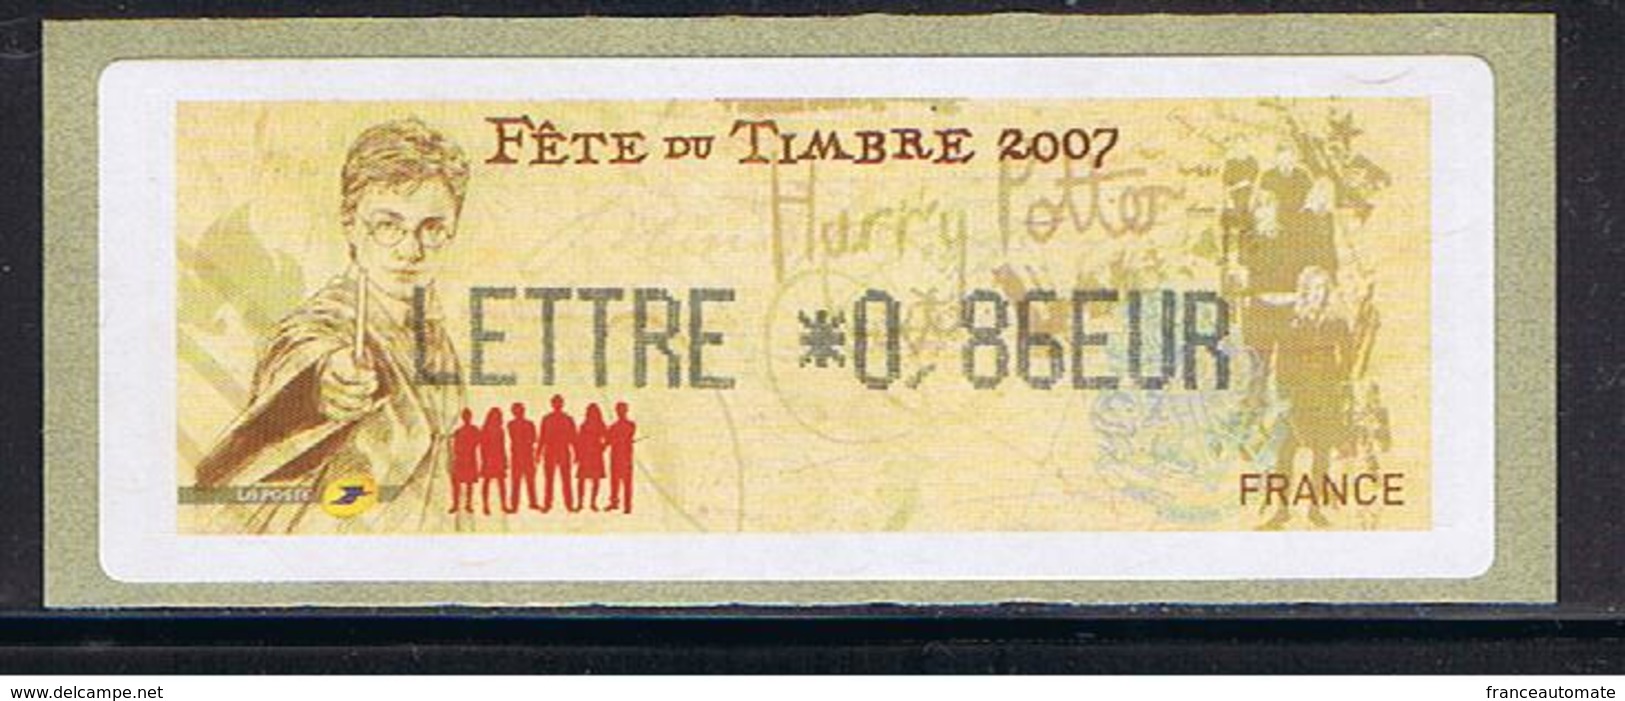 ATM, LISA1, HARRY POTTER, LETTRE 0.86 EUR, 10 Mars 2007, Papier Thermique, De VALBONNE Sur LISA1. JOURNEE DU TIMBRE. - 1999-2009 Vignettes Illustrées